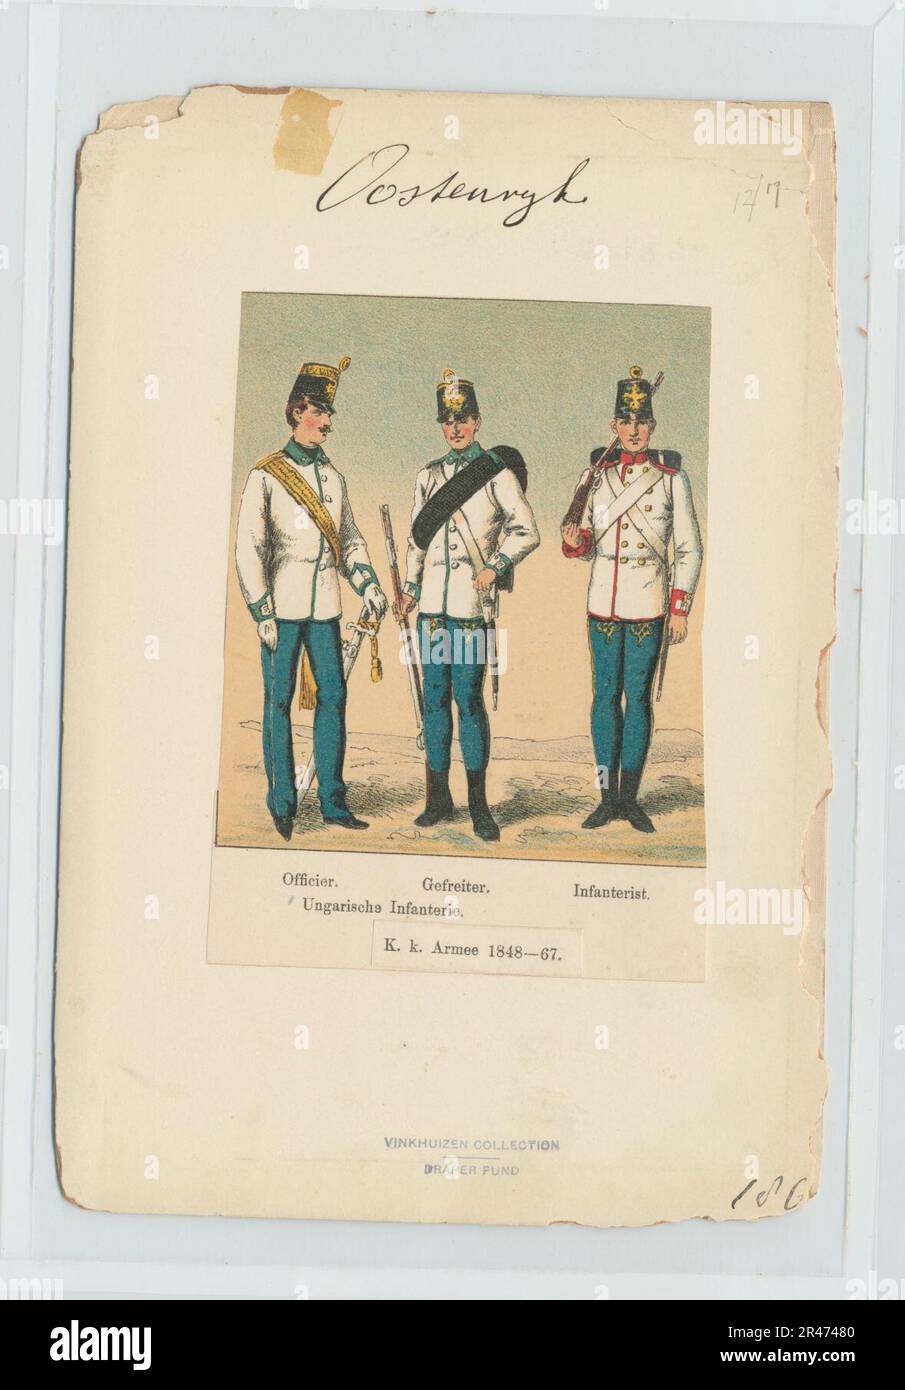 Ungarische Infanterie- Officier, Gefreiter, Infanterist. K.k. Armee 1848-67 Stock Photo